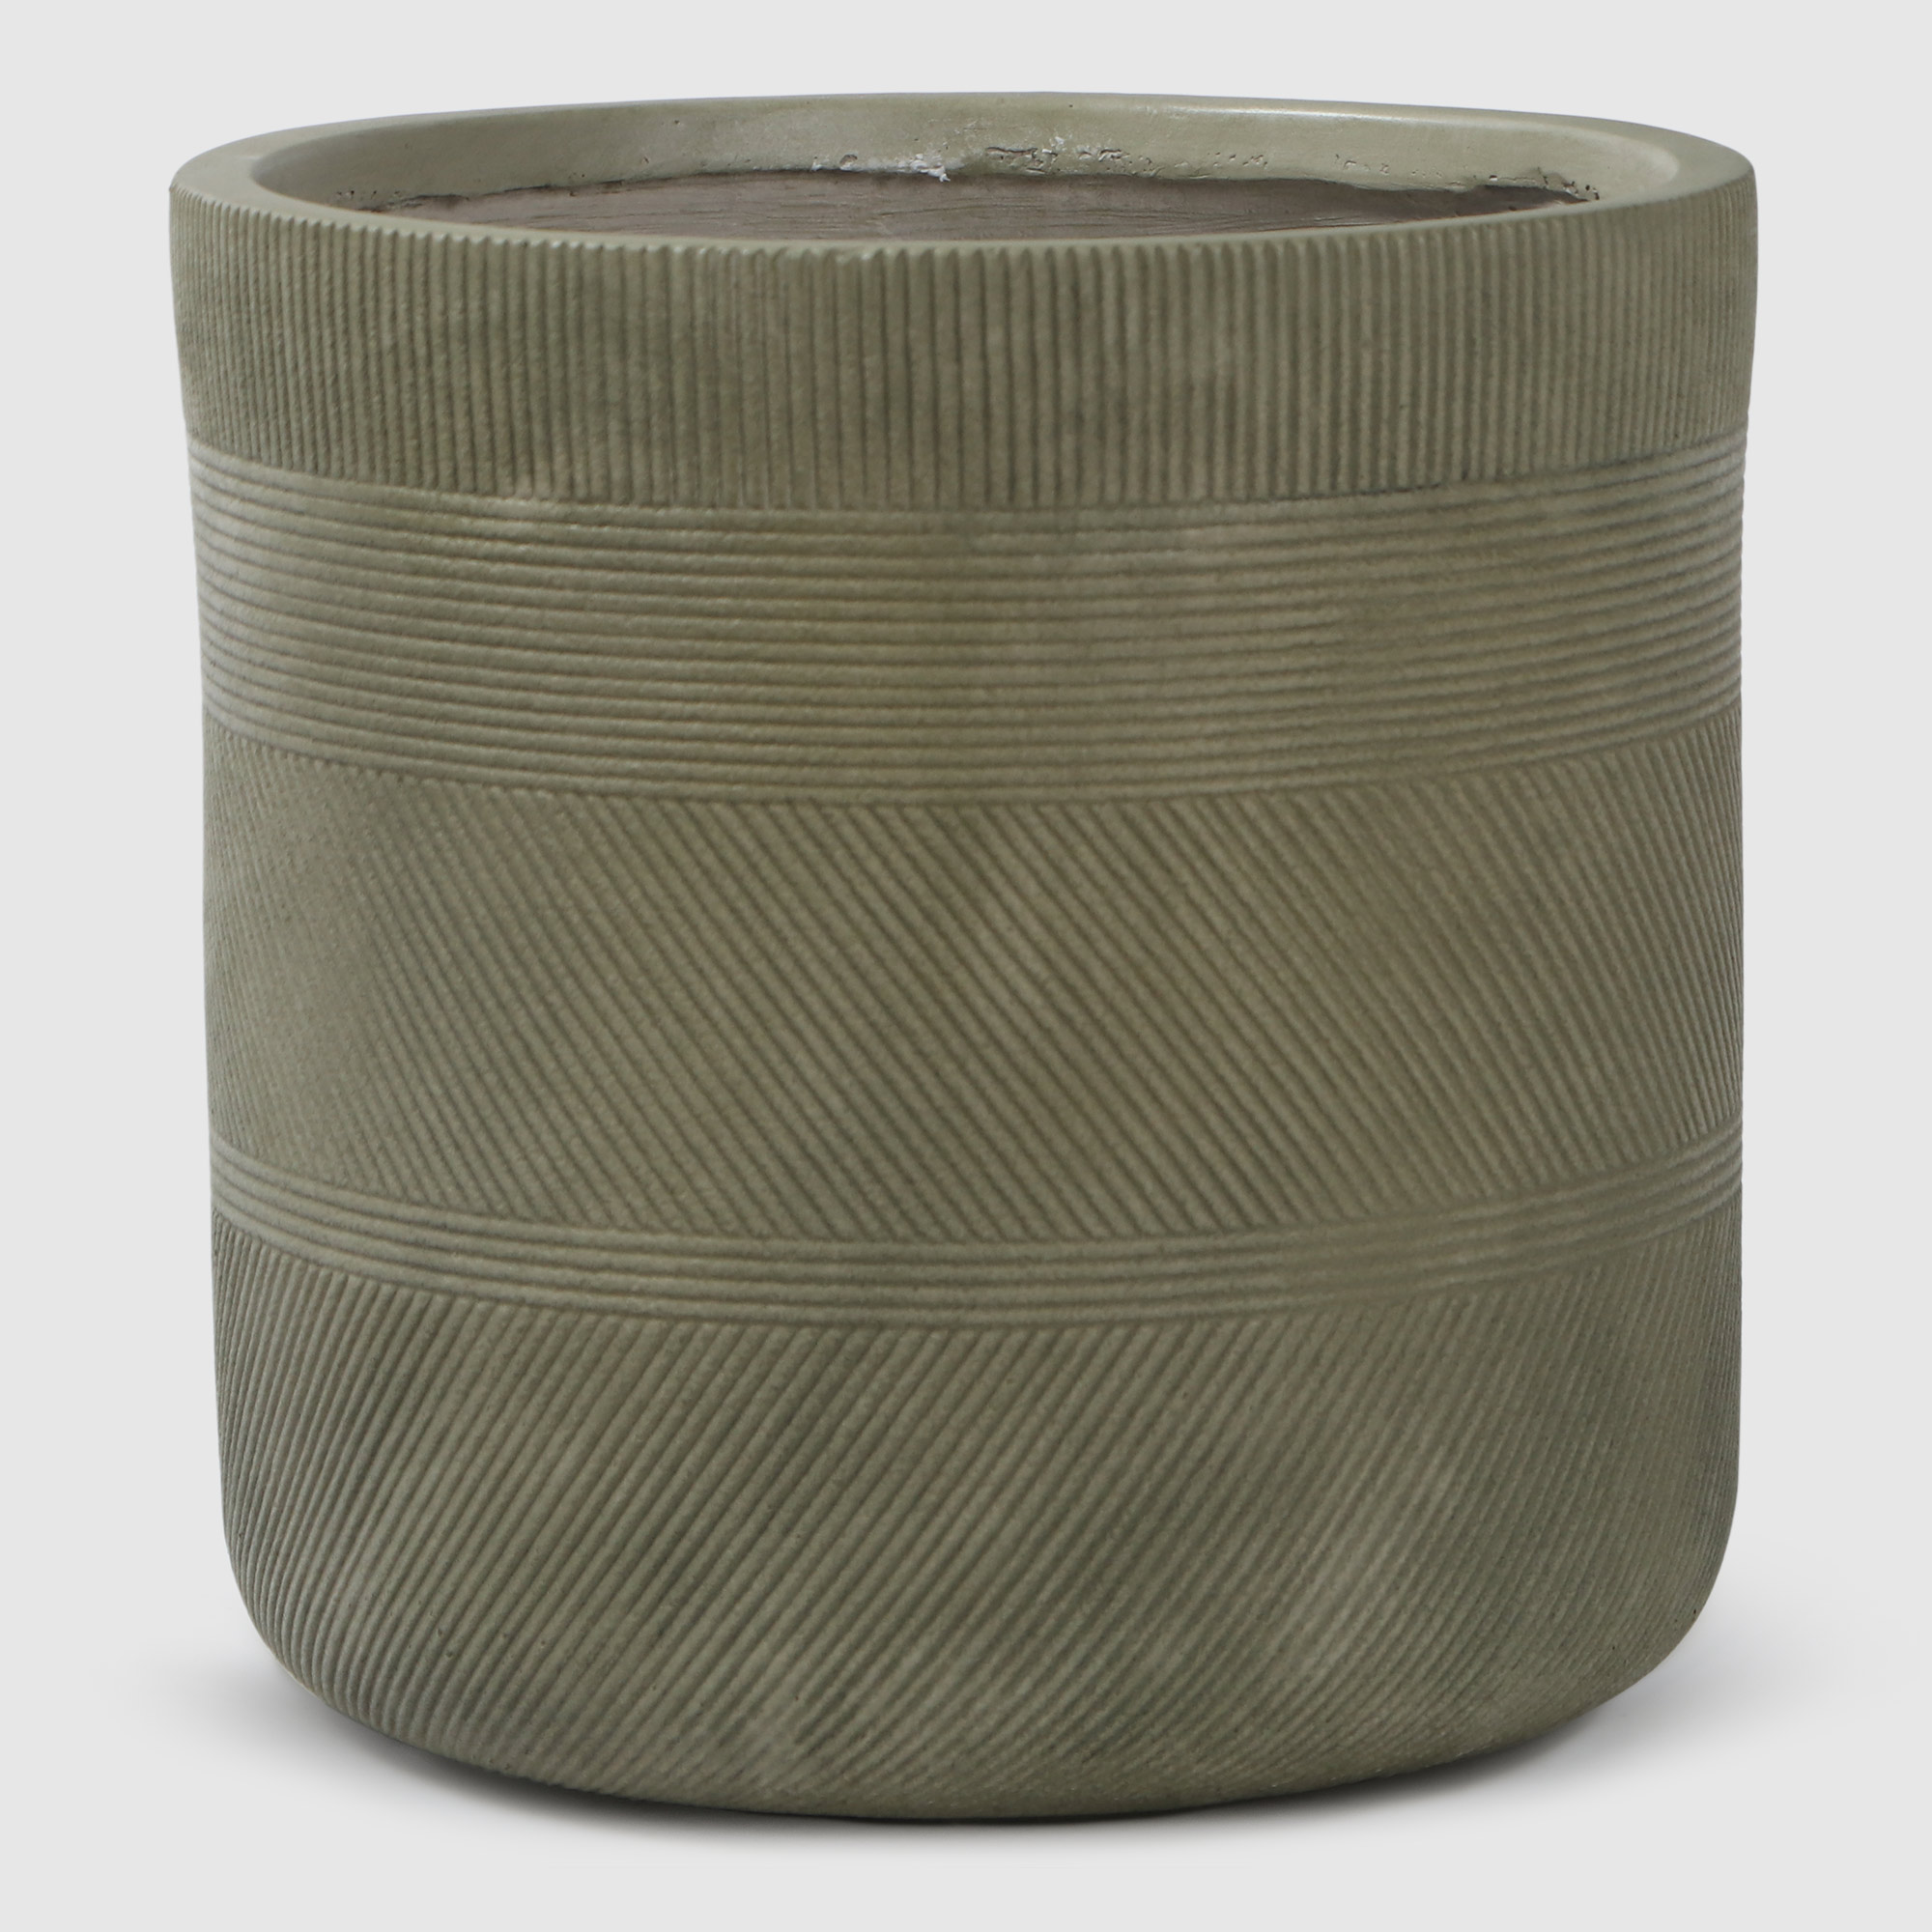 Где купить Горшок для цветов L&T Pottery цилиндр антик светло-зеленый D24 Без бренда 